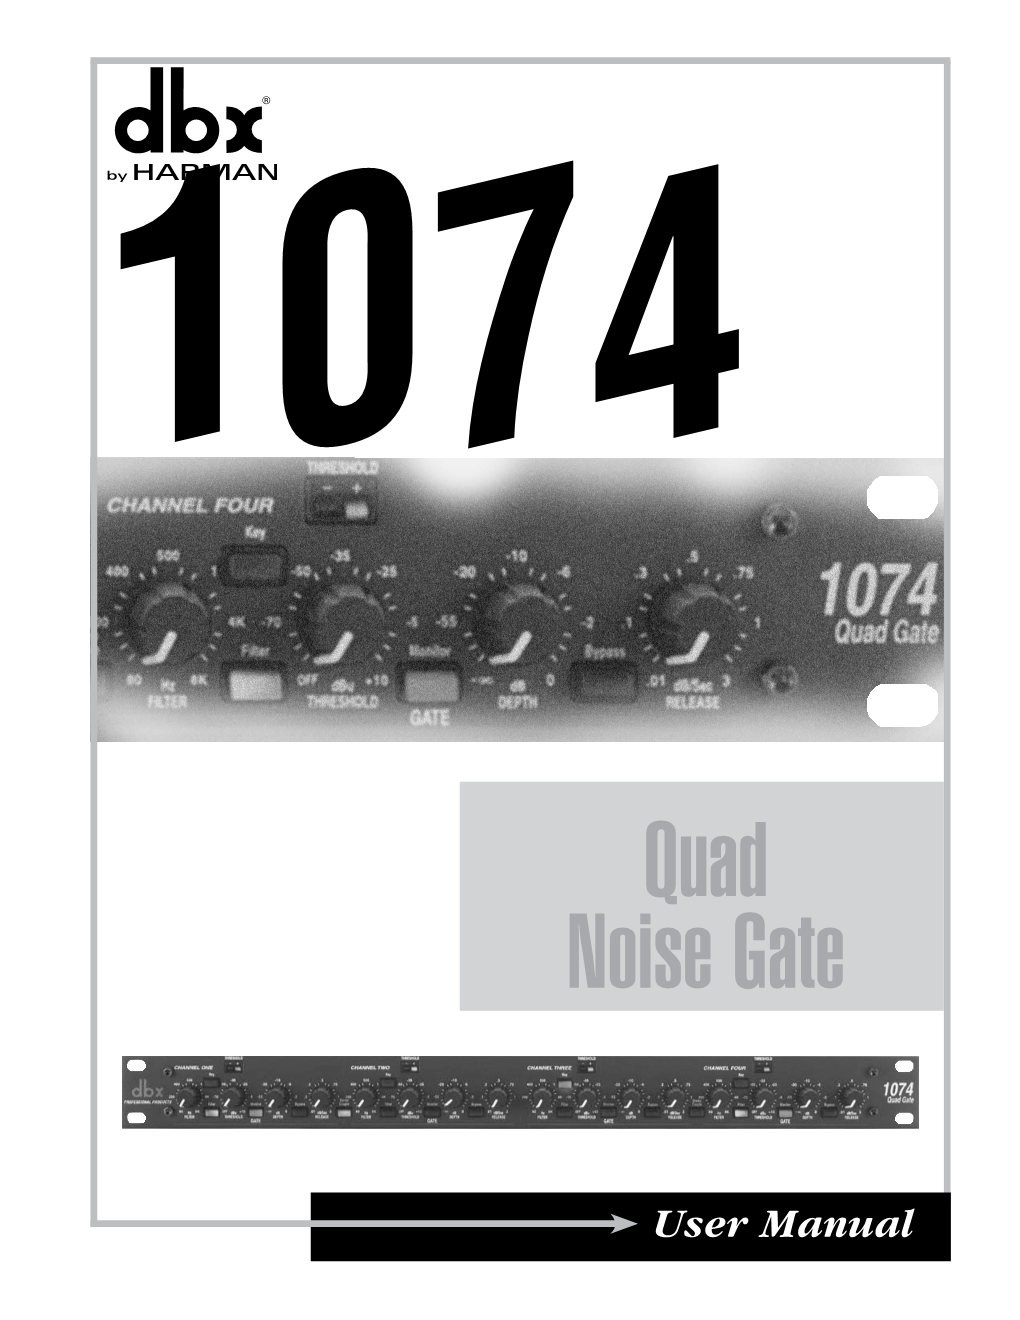 Quad Noise Gate